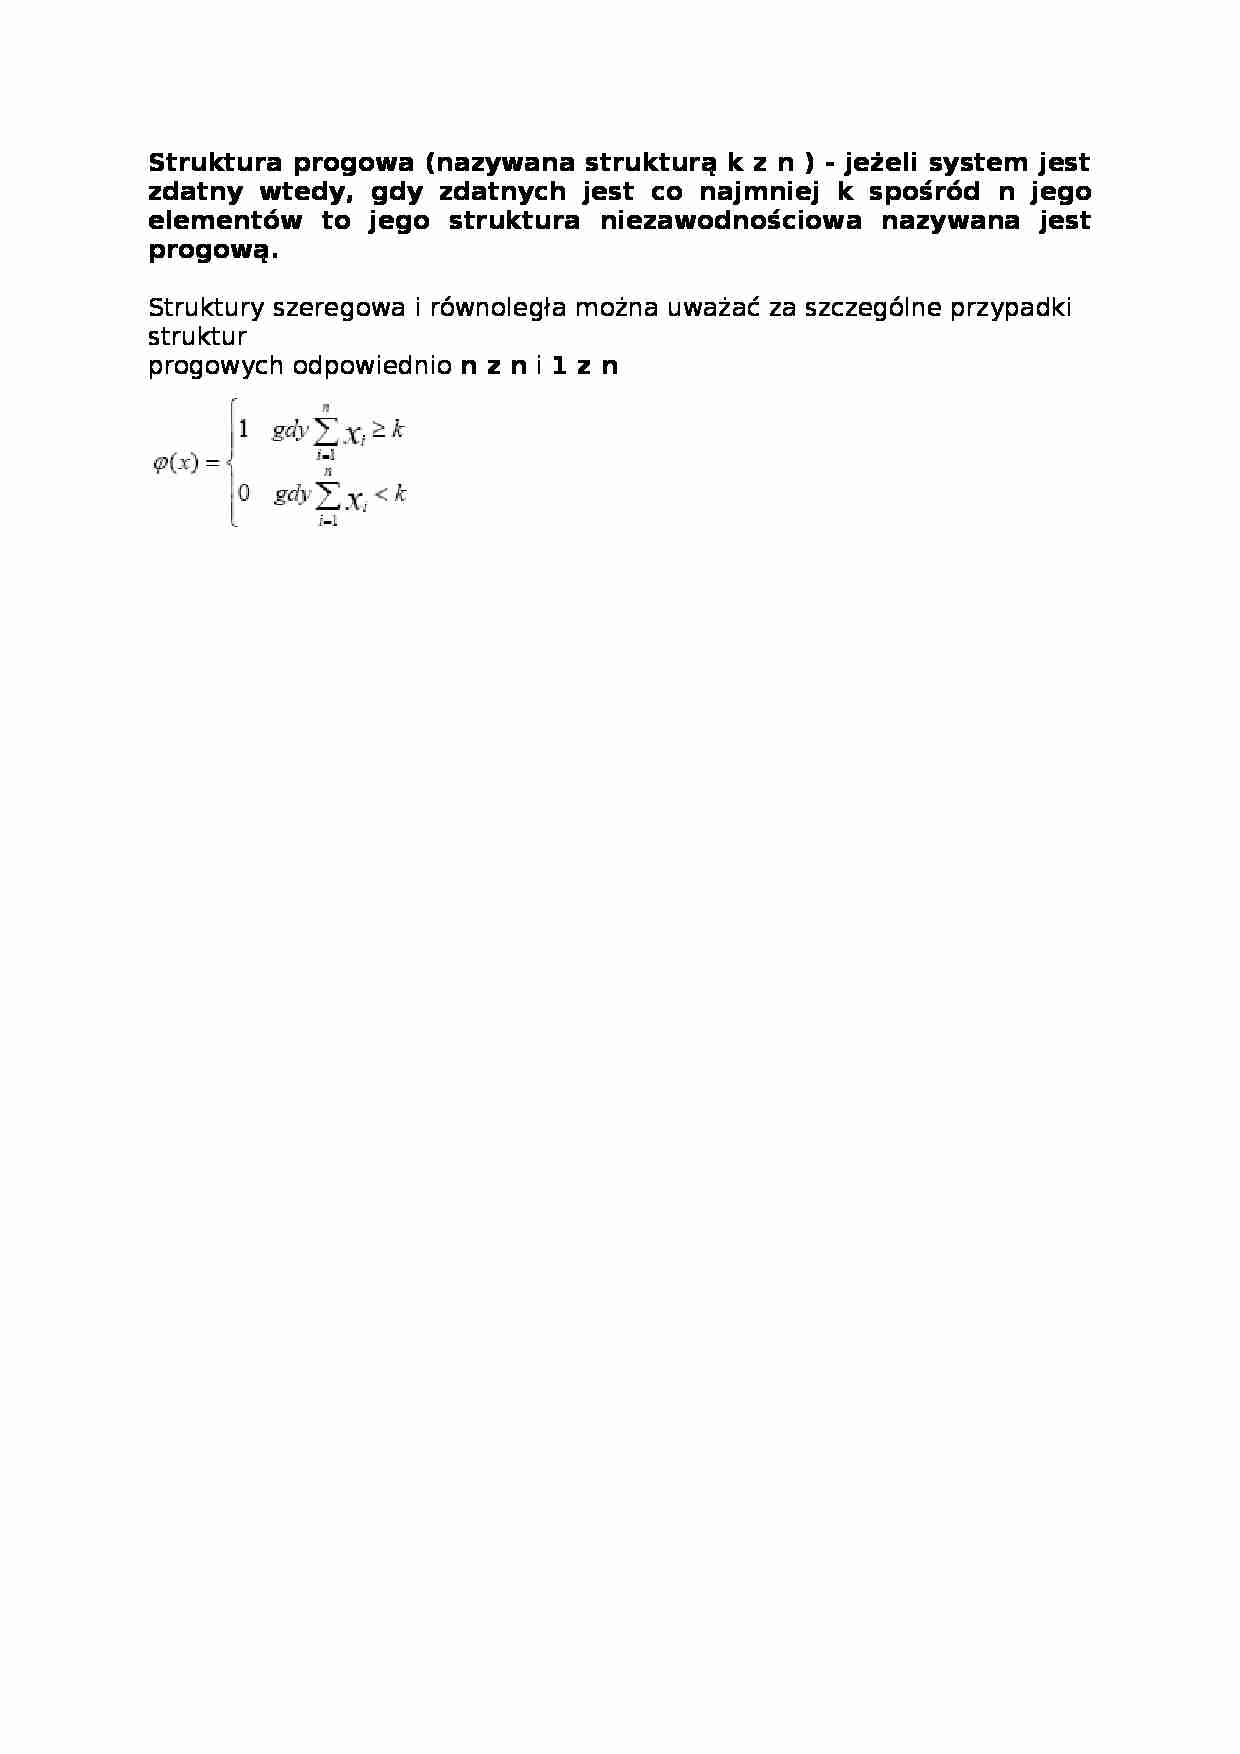 Struktura progowa - wykład - strona 1